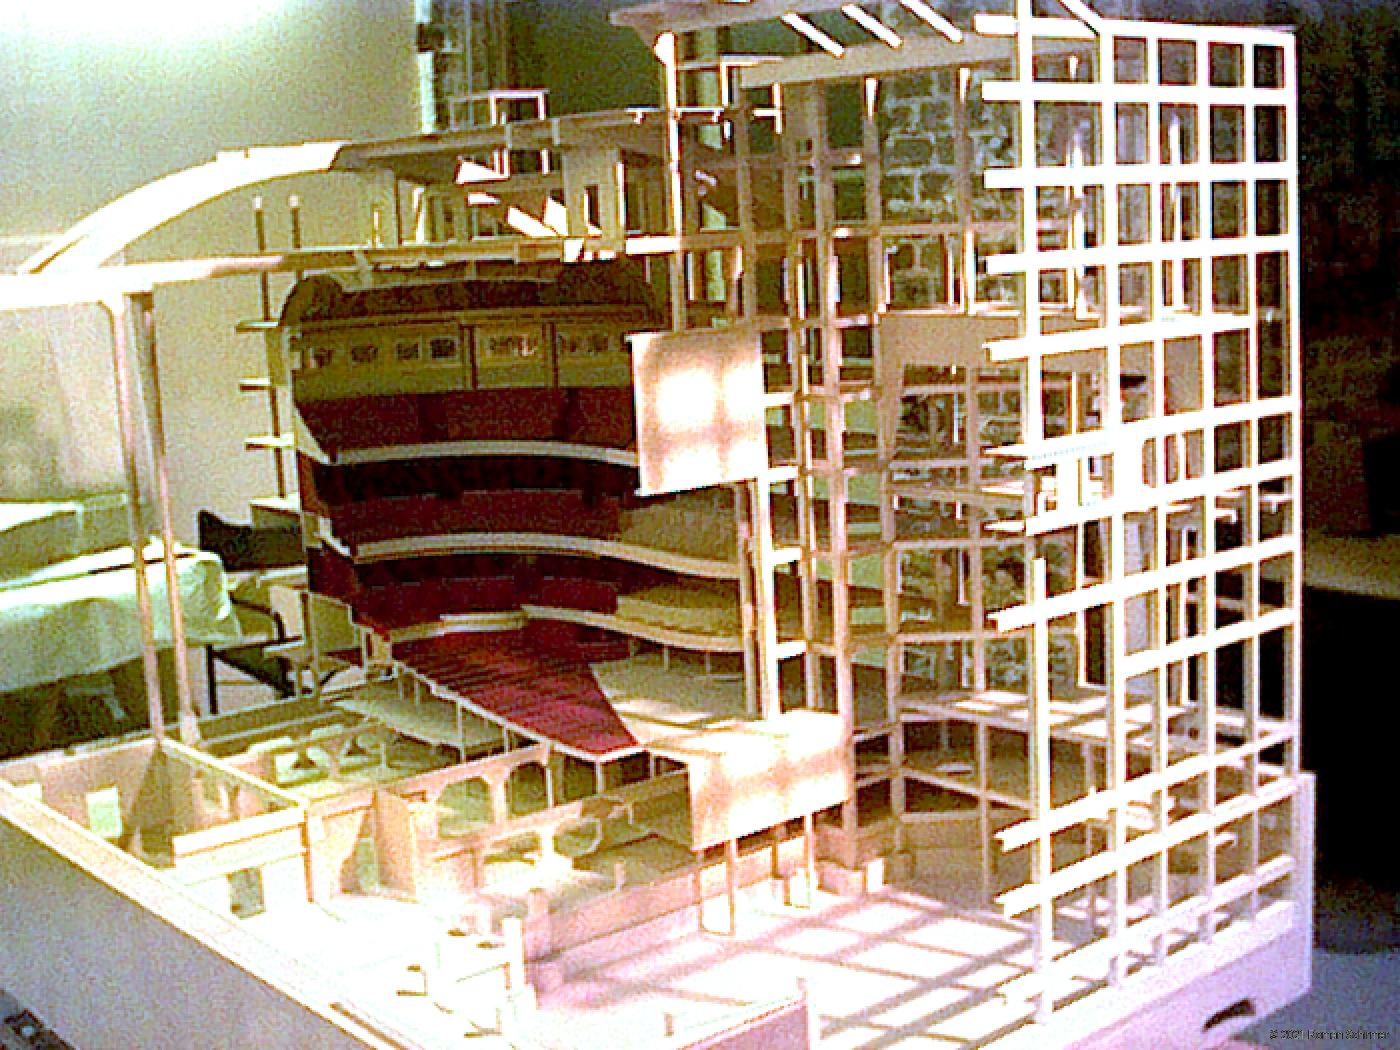 Model of the 'Théâtre des Champs-Elysées'